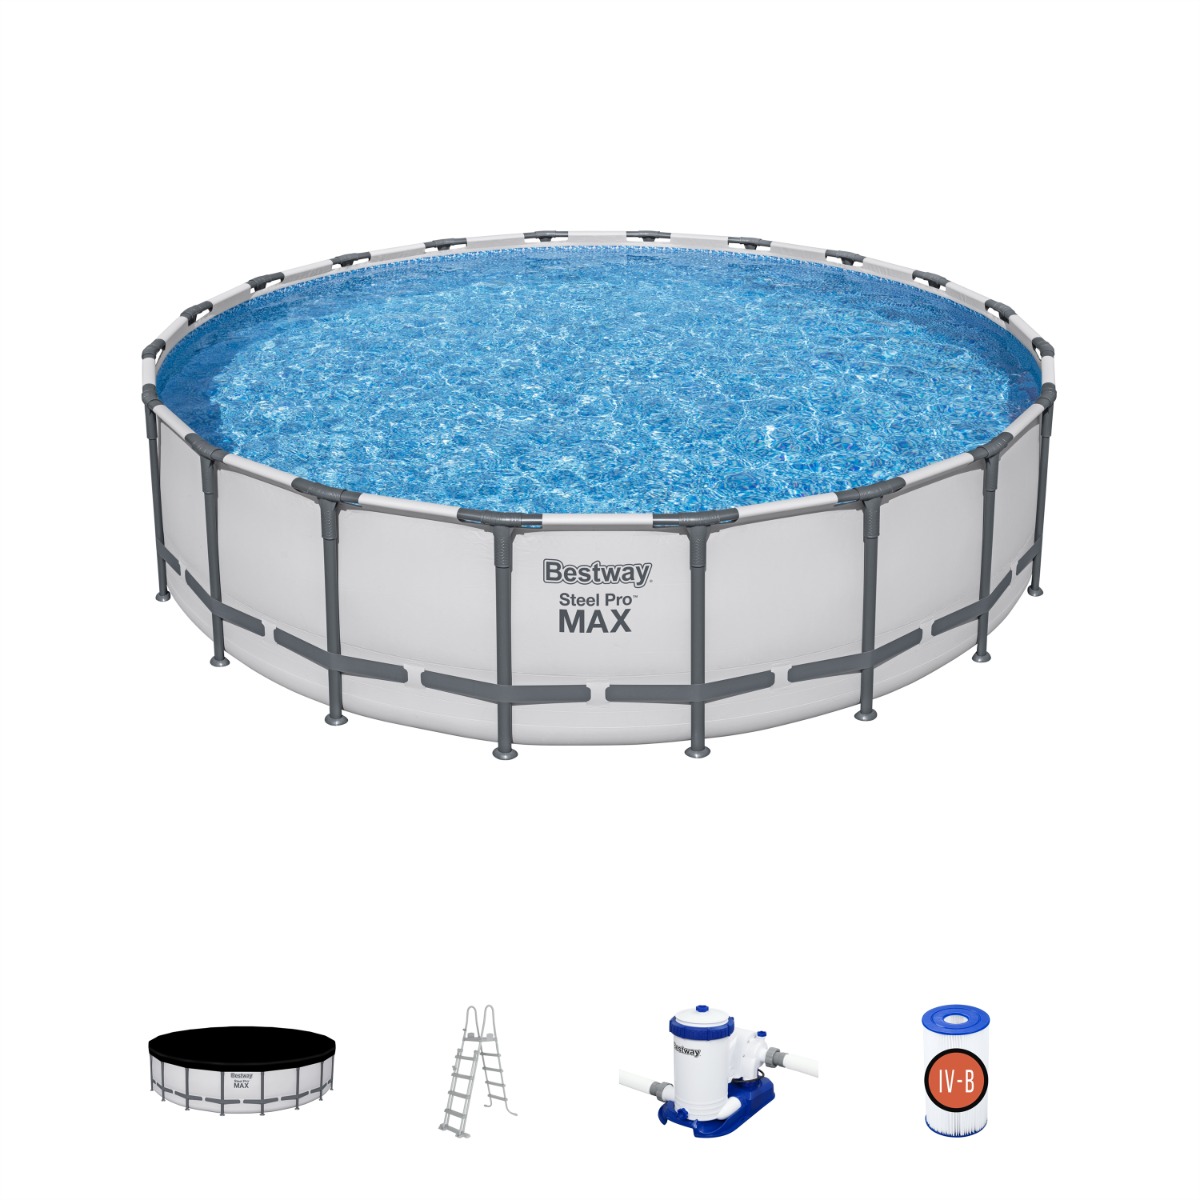 Bestway Steel Pro MAX zwembad - 610 x 132 cm - met filterpomp en accessoires